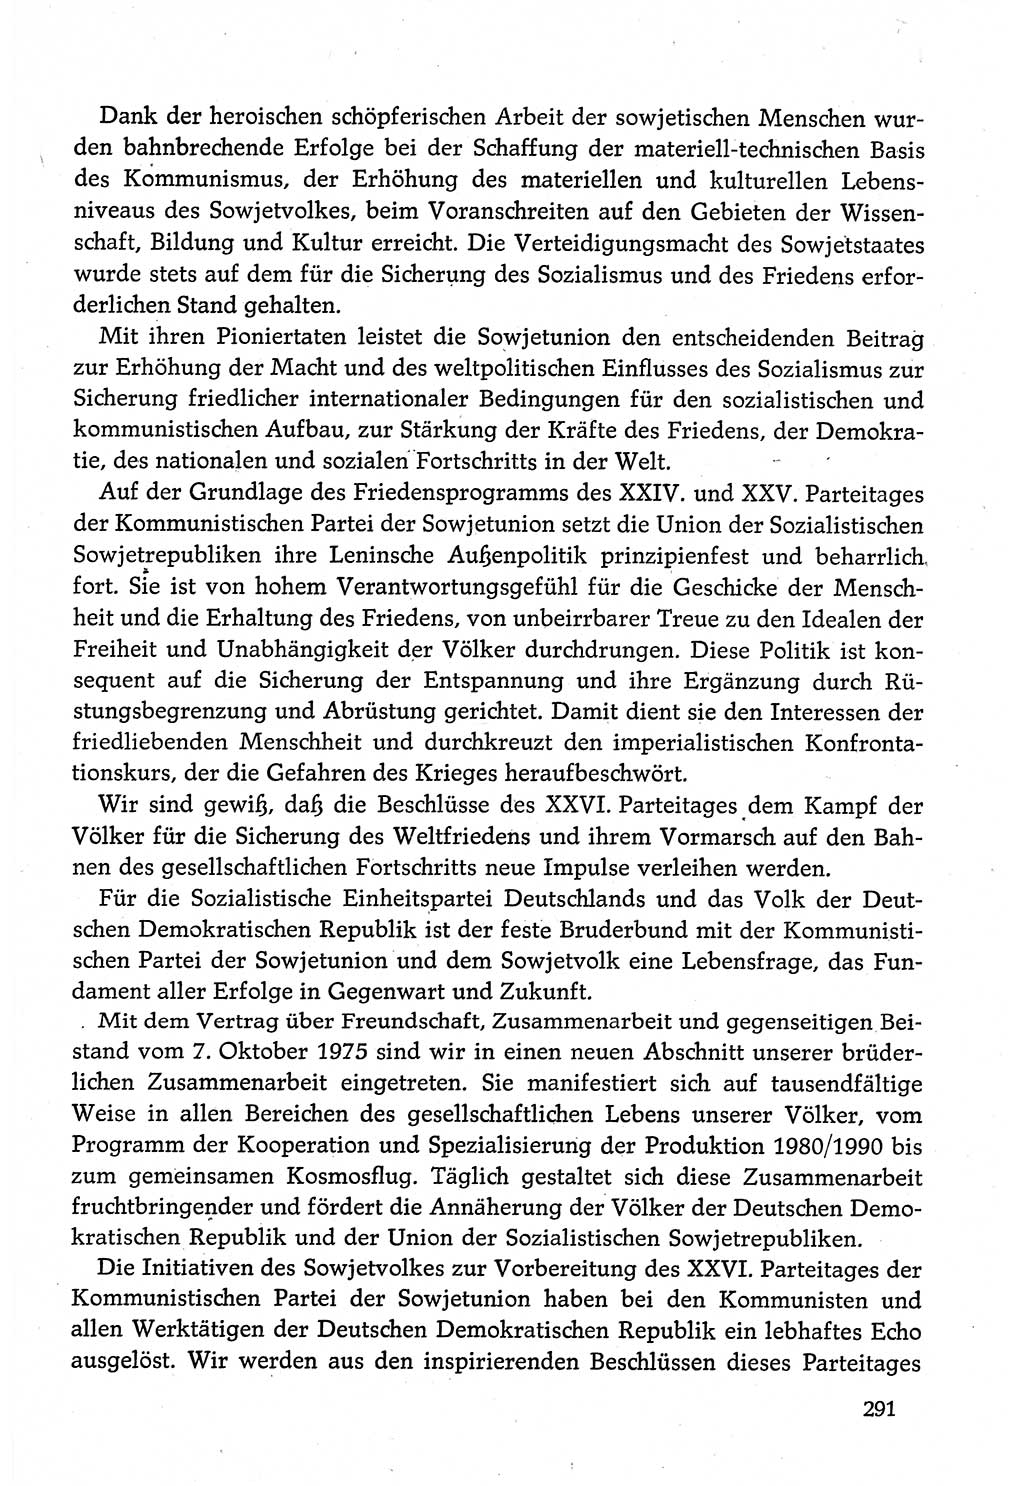 Dokumente der Sozialistischen Einheitspartei Deutschlands (SED) [Deutsche Demokratische Republik (DDR)] 1980-1981, Seite 291 (Dok. SED DDR 1980-1981, S. 291)